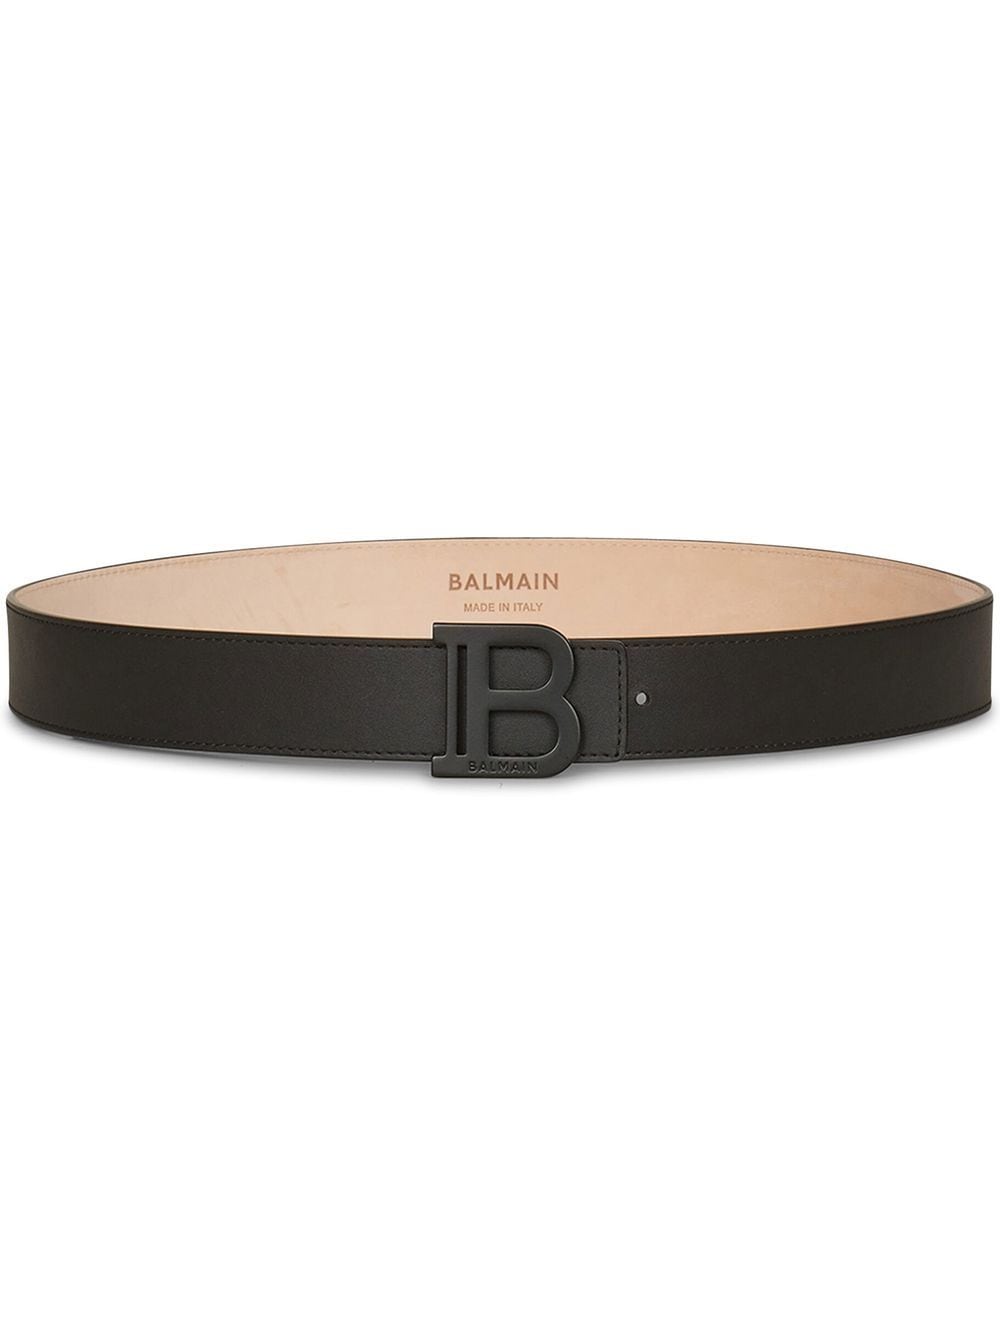 BALMAIN B Belt Black